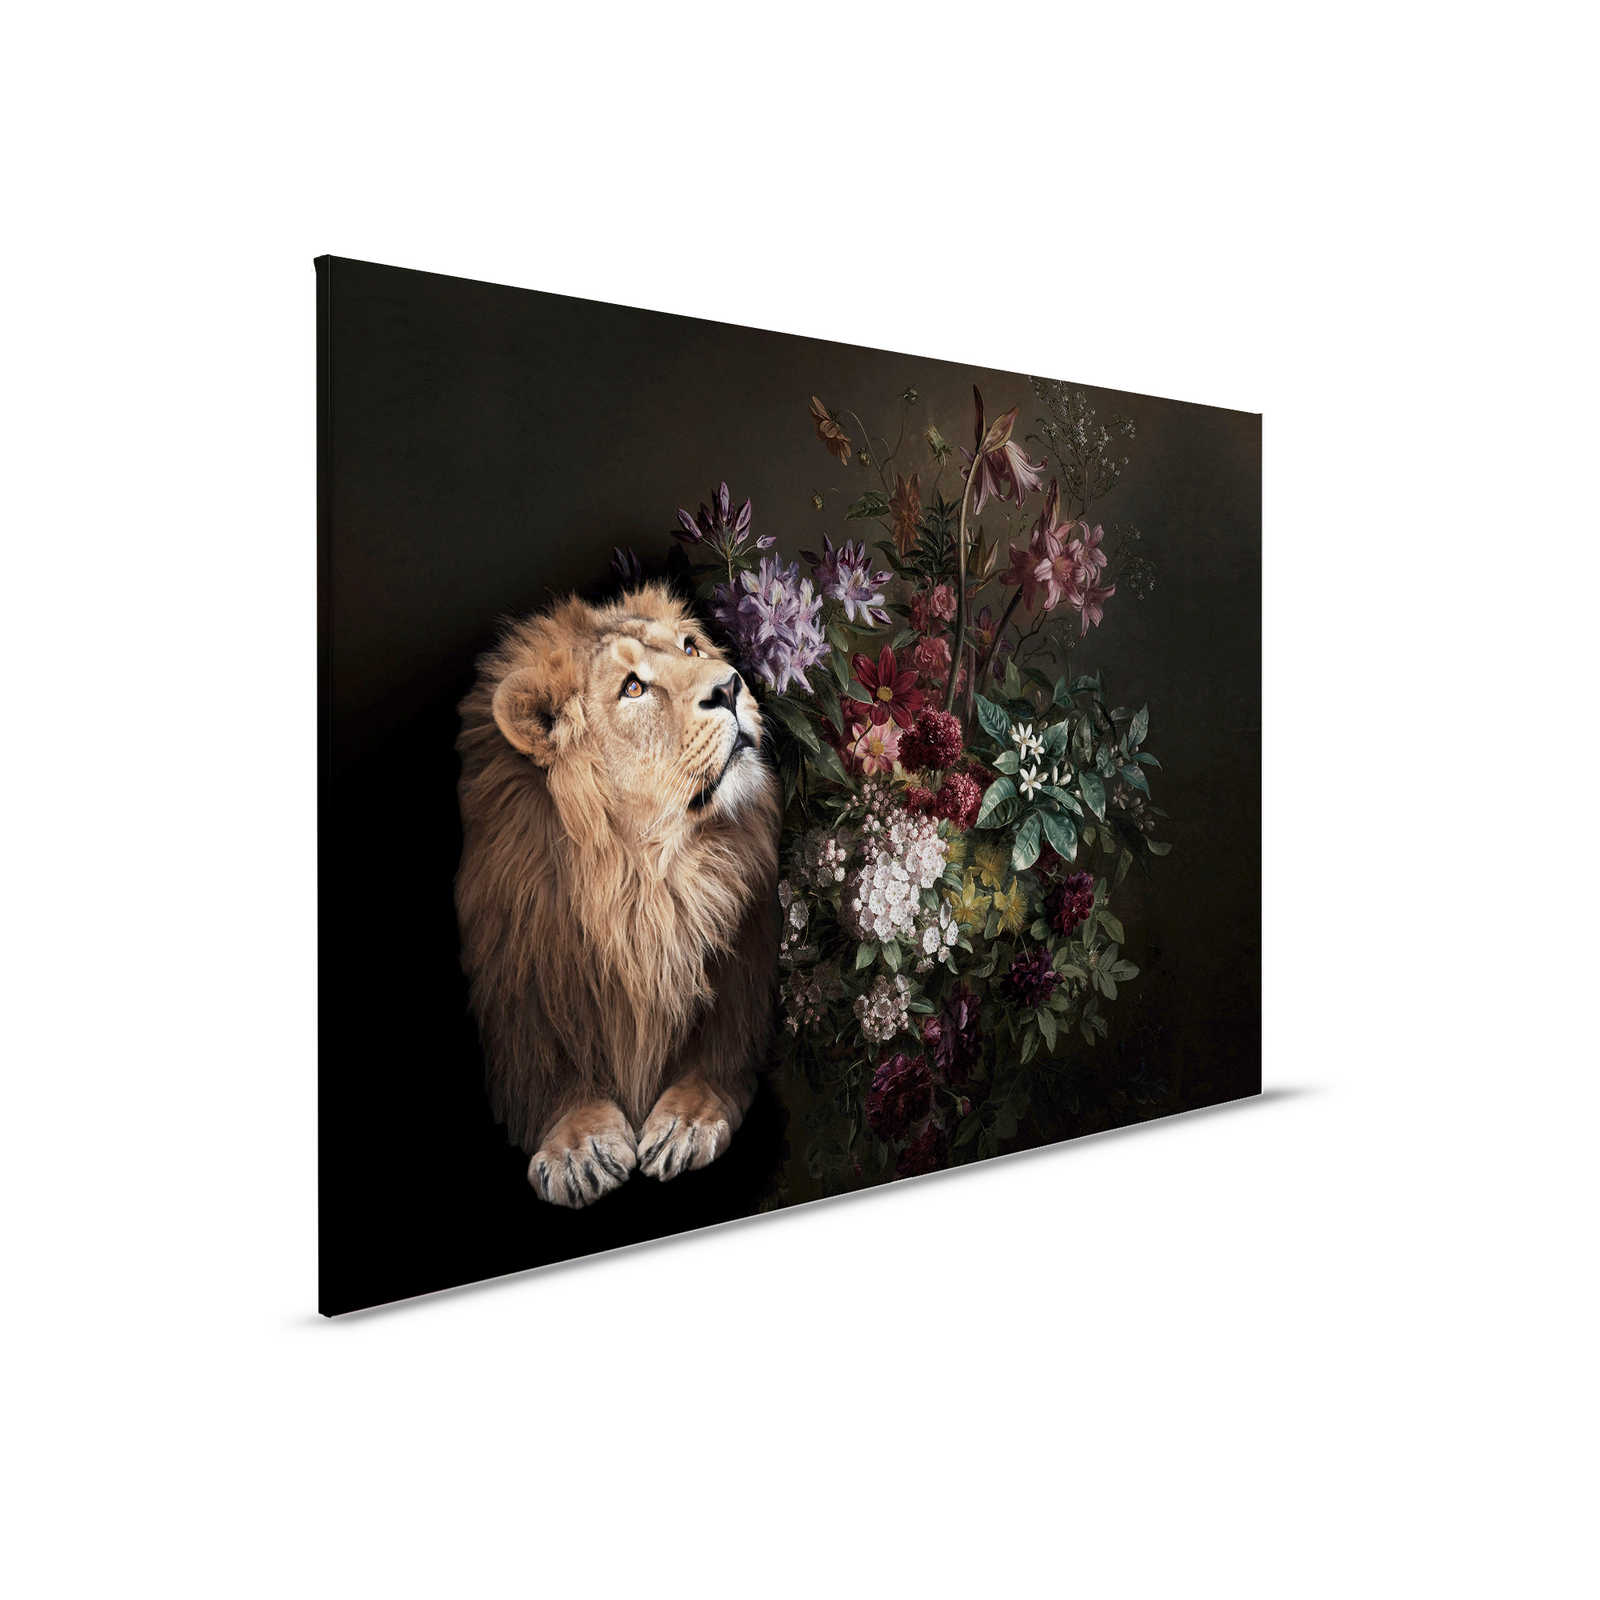         Canvas painting Lion Portrait with Flowers - 0,90 m x 0,60 m
    